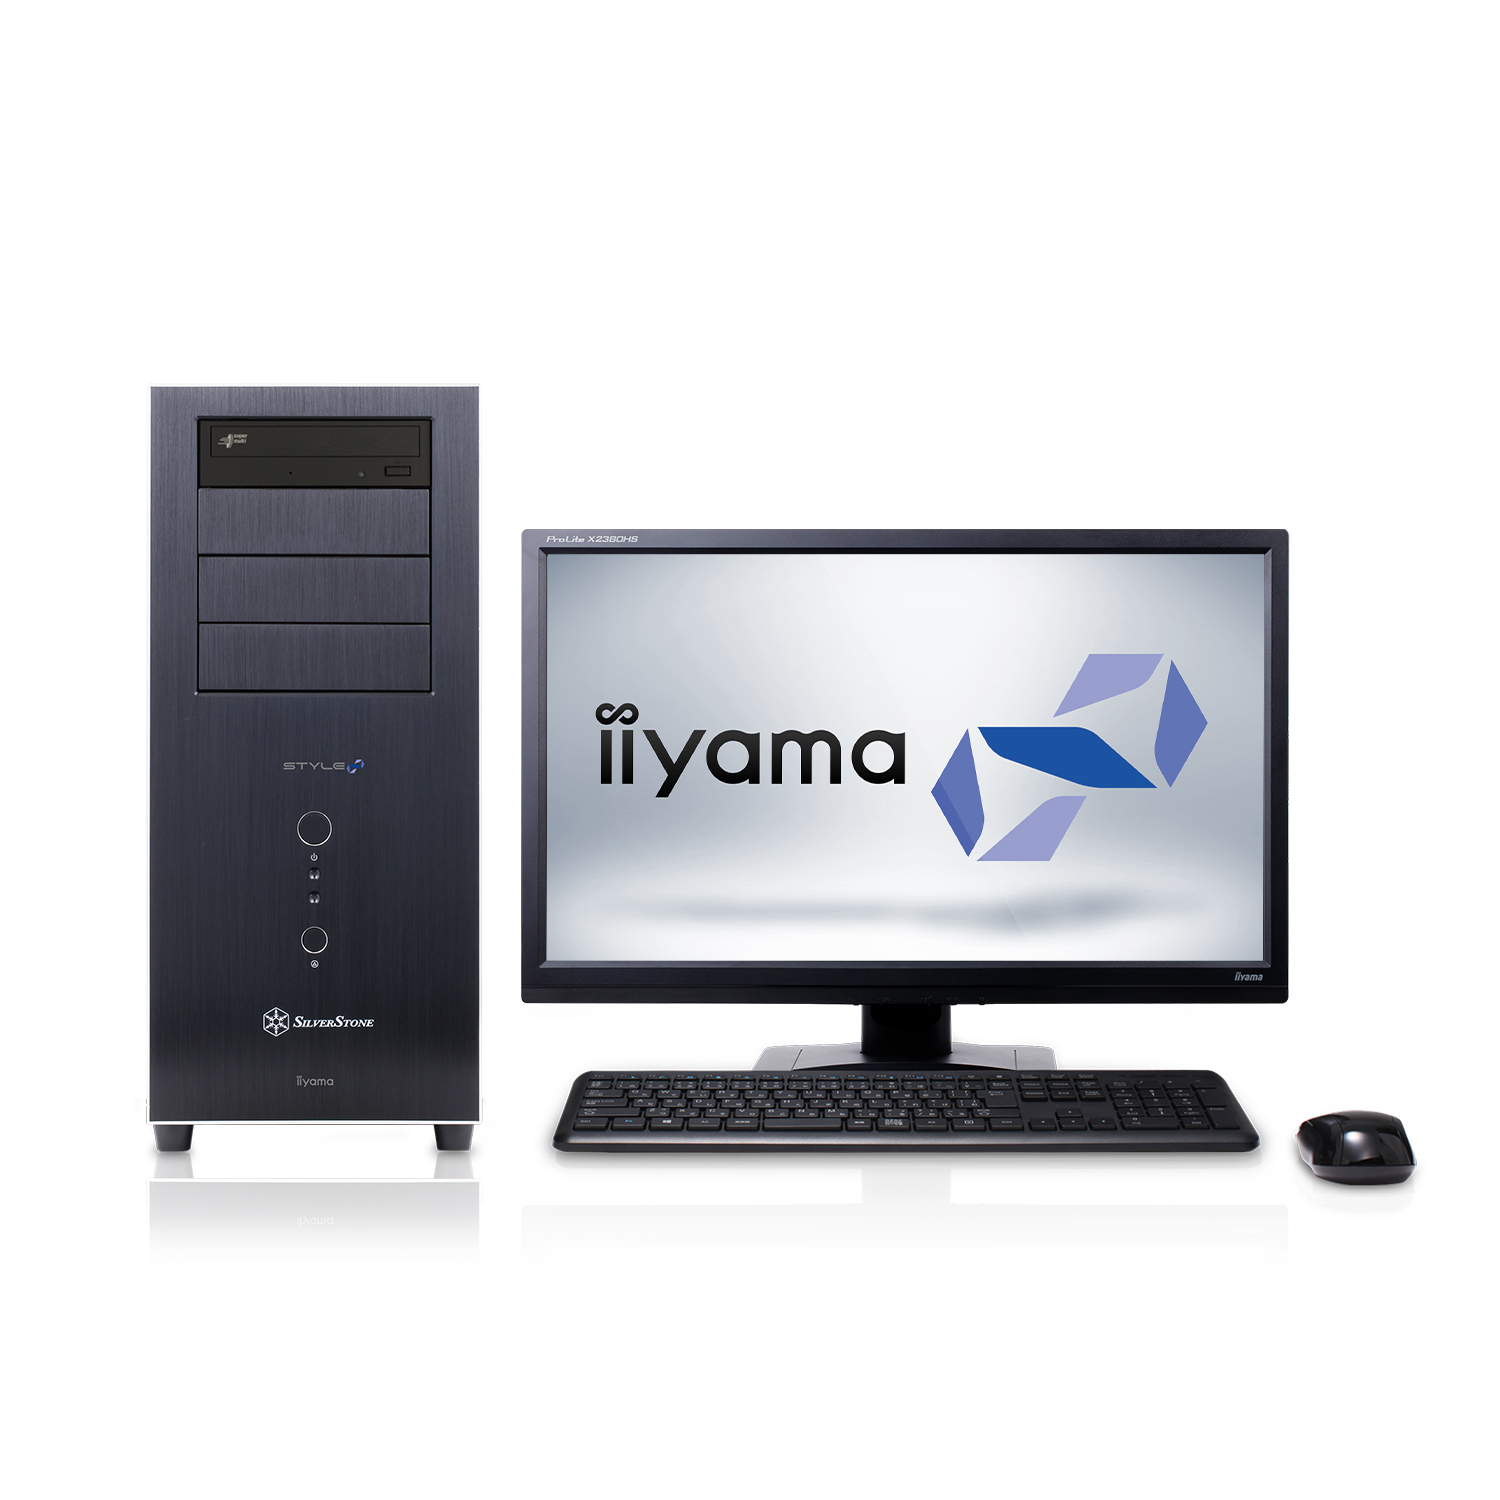 Iiyama Pc Style スタイル インフィニティ よりインテル R Core Tm X シリーズ Core Tm I9 プロセッサーを搭載したミドルタワーパソコンを発売 株式会社ユニットコムのプレスリリース